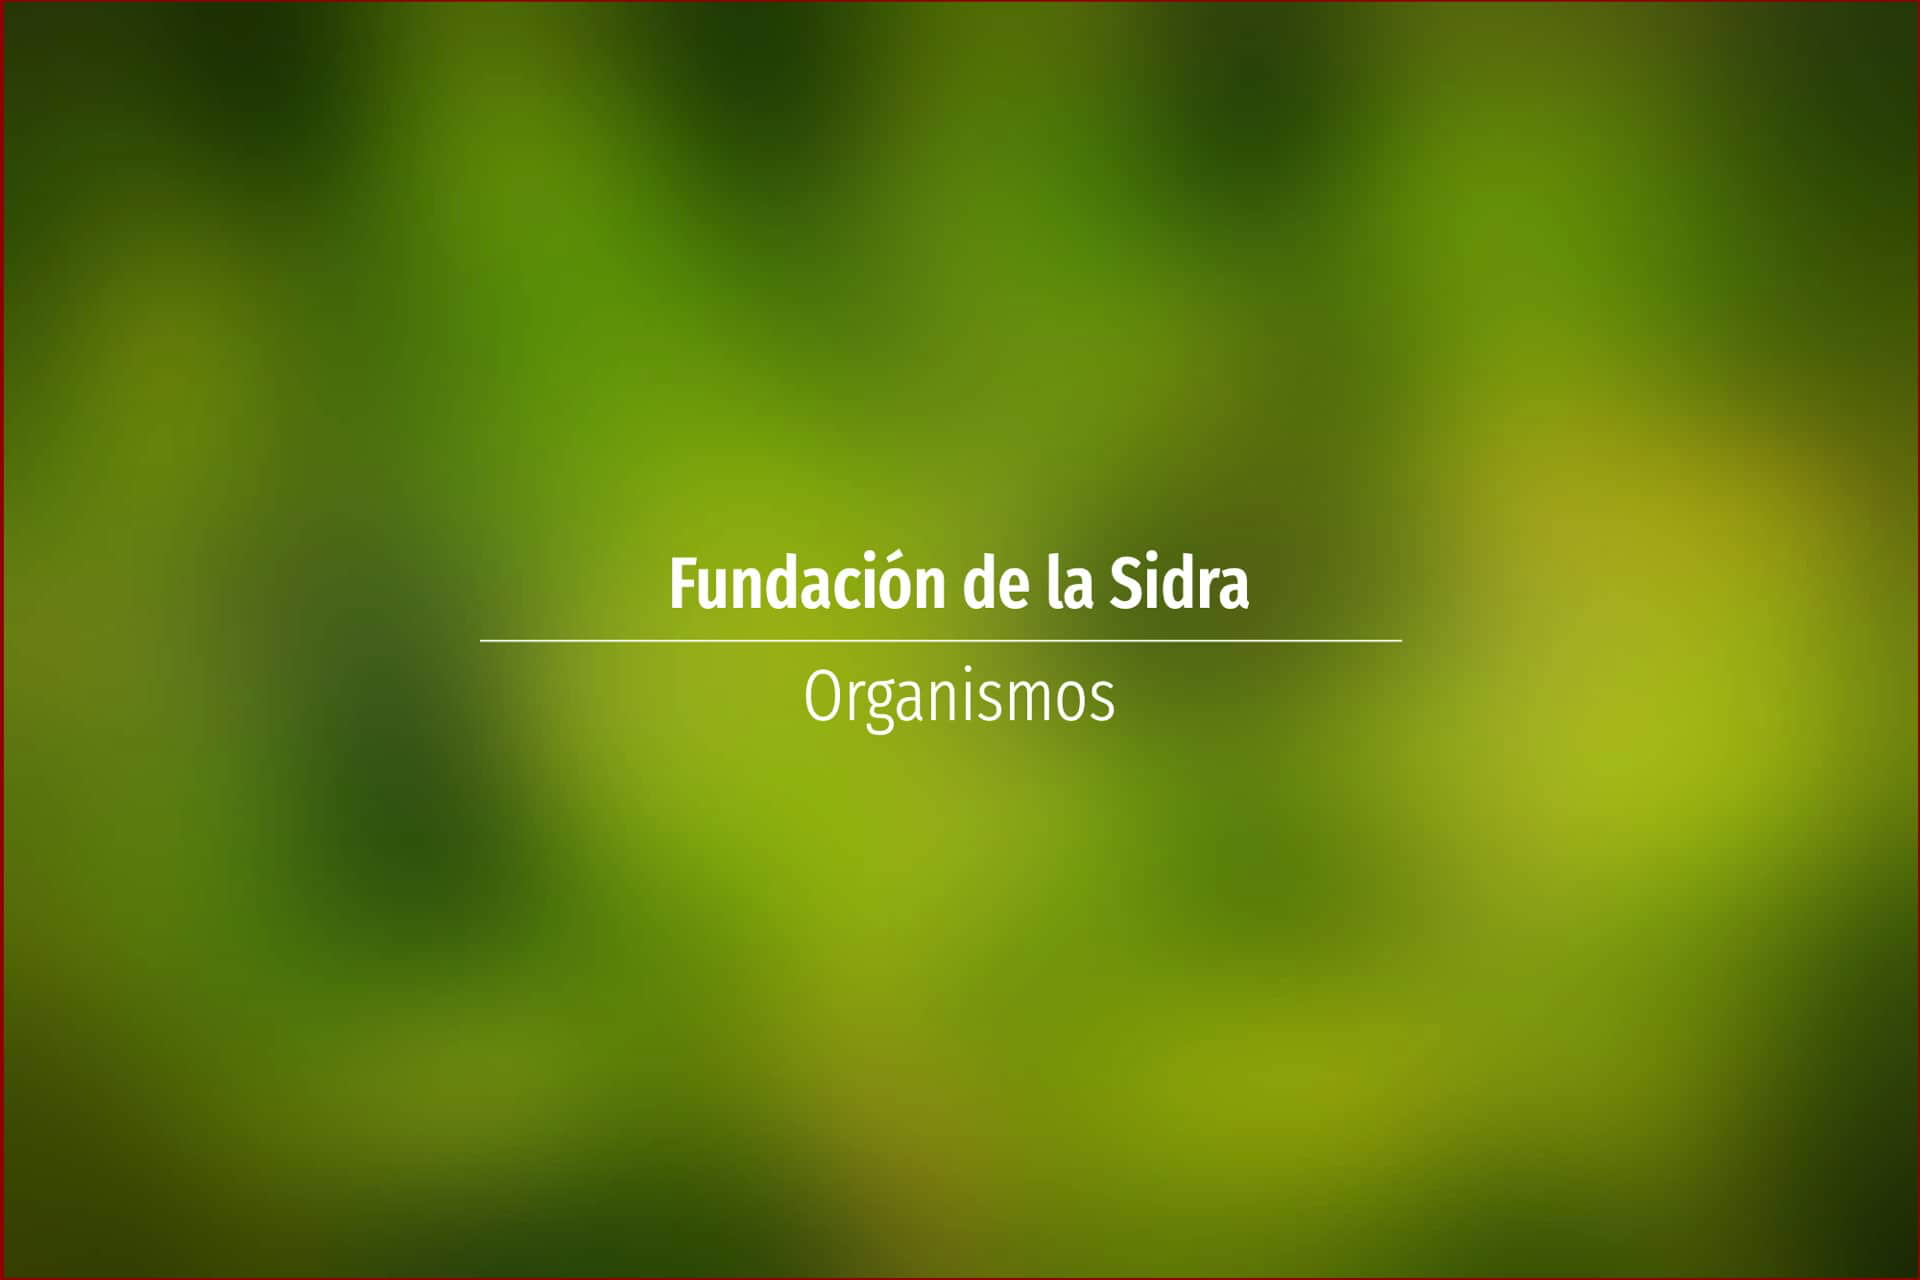 Fundación de la Sidra